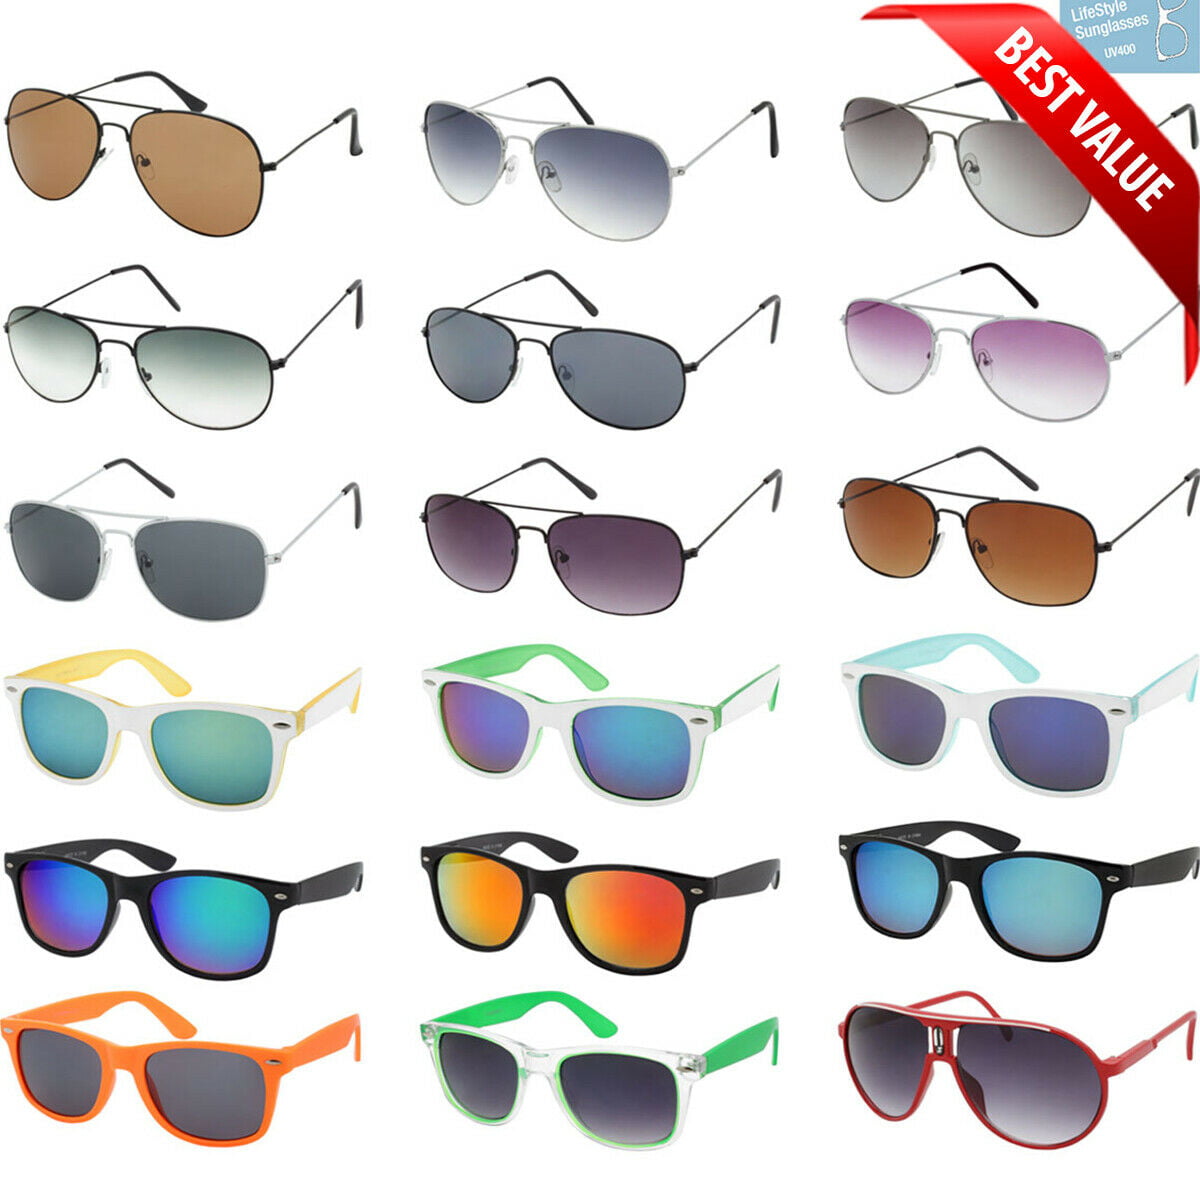 20 pcs Wholesale Sunglasses Lot Unisex Men Women Assorted Styles $100 VALUE 